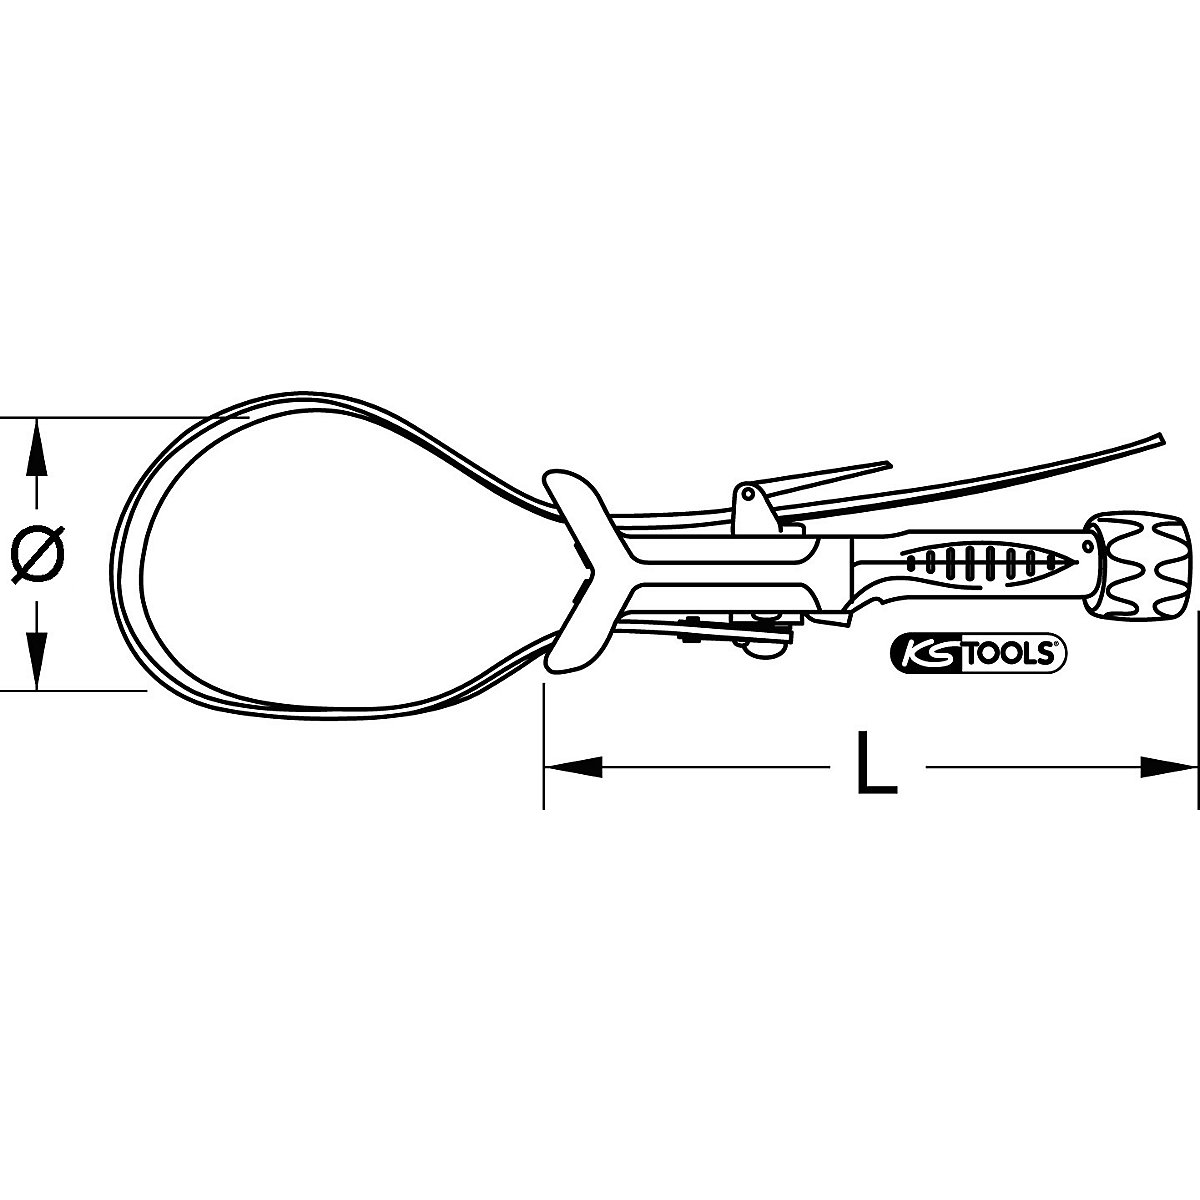 Clește cu bandă pentru țevi – KS Tools (Imagine produs 5)-4